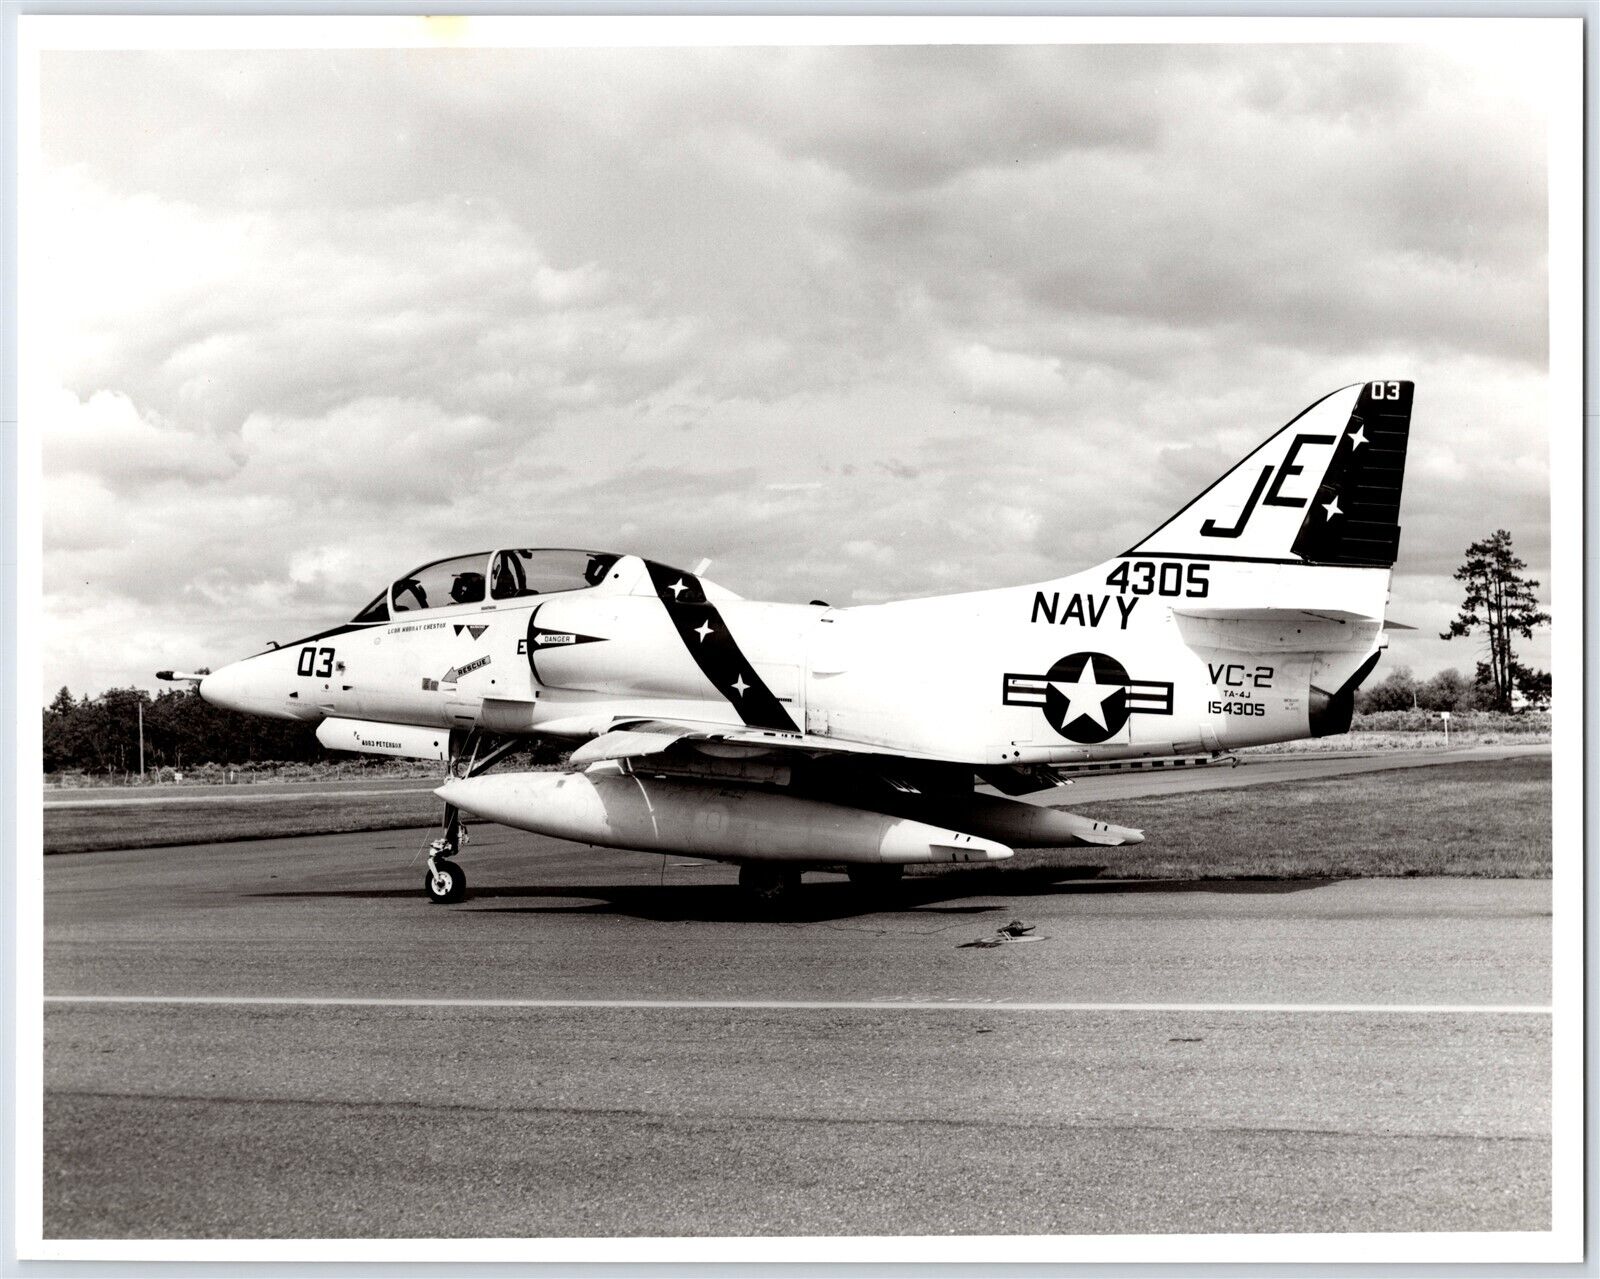 US Navy Douglas A-4 Skyhawk Fleet Support VC-2 Blue Falcons Photo B&W 8x10 A3